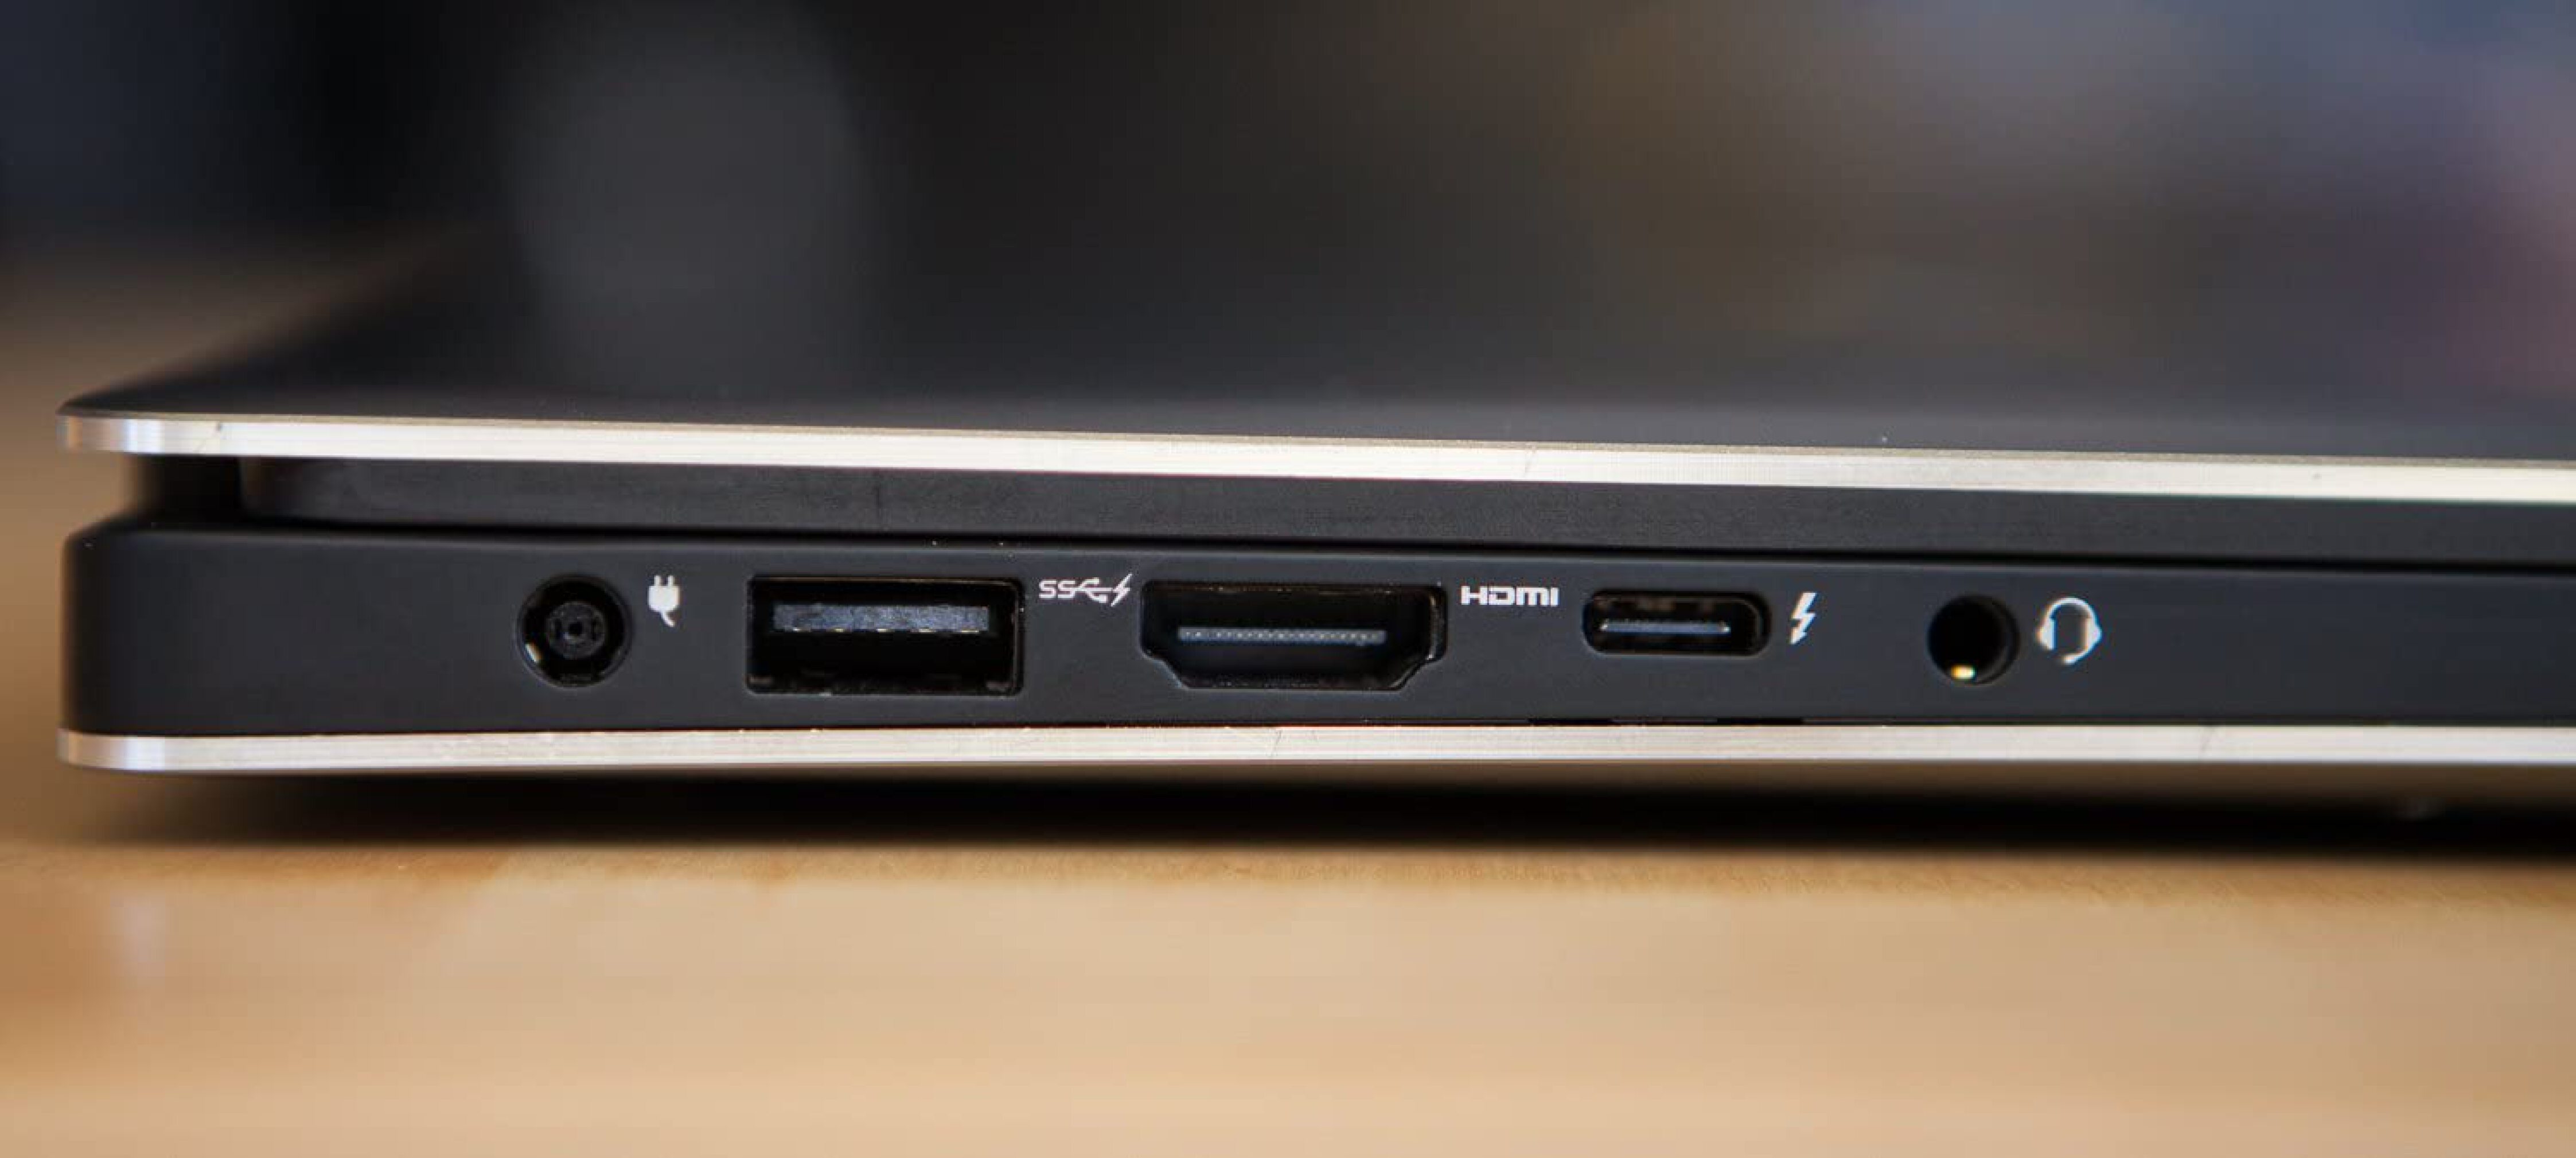  لپ تاپ دل 9560 با پردازنده نسل هفتم |لاکچری لپ تاپ سبزوار 